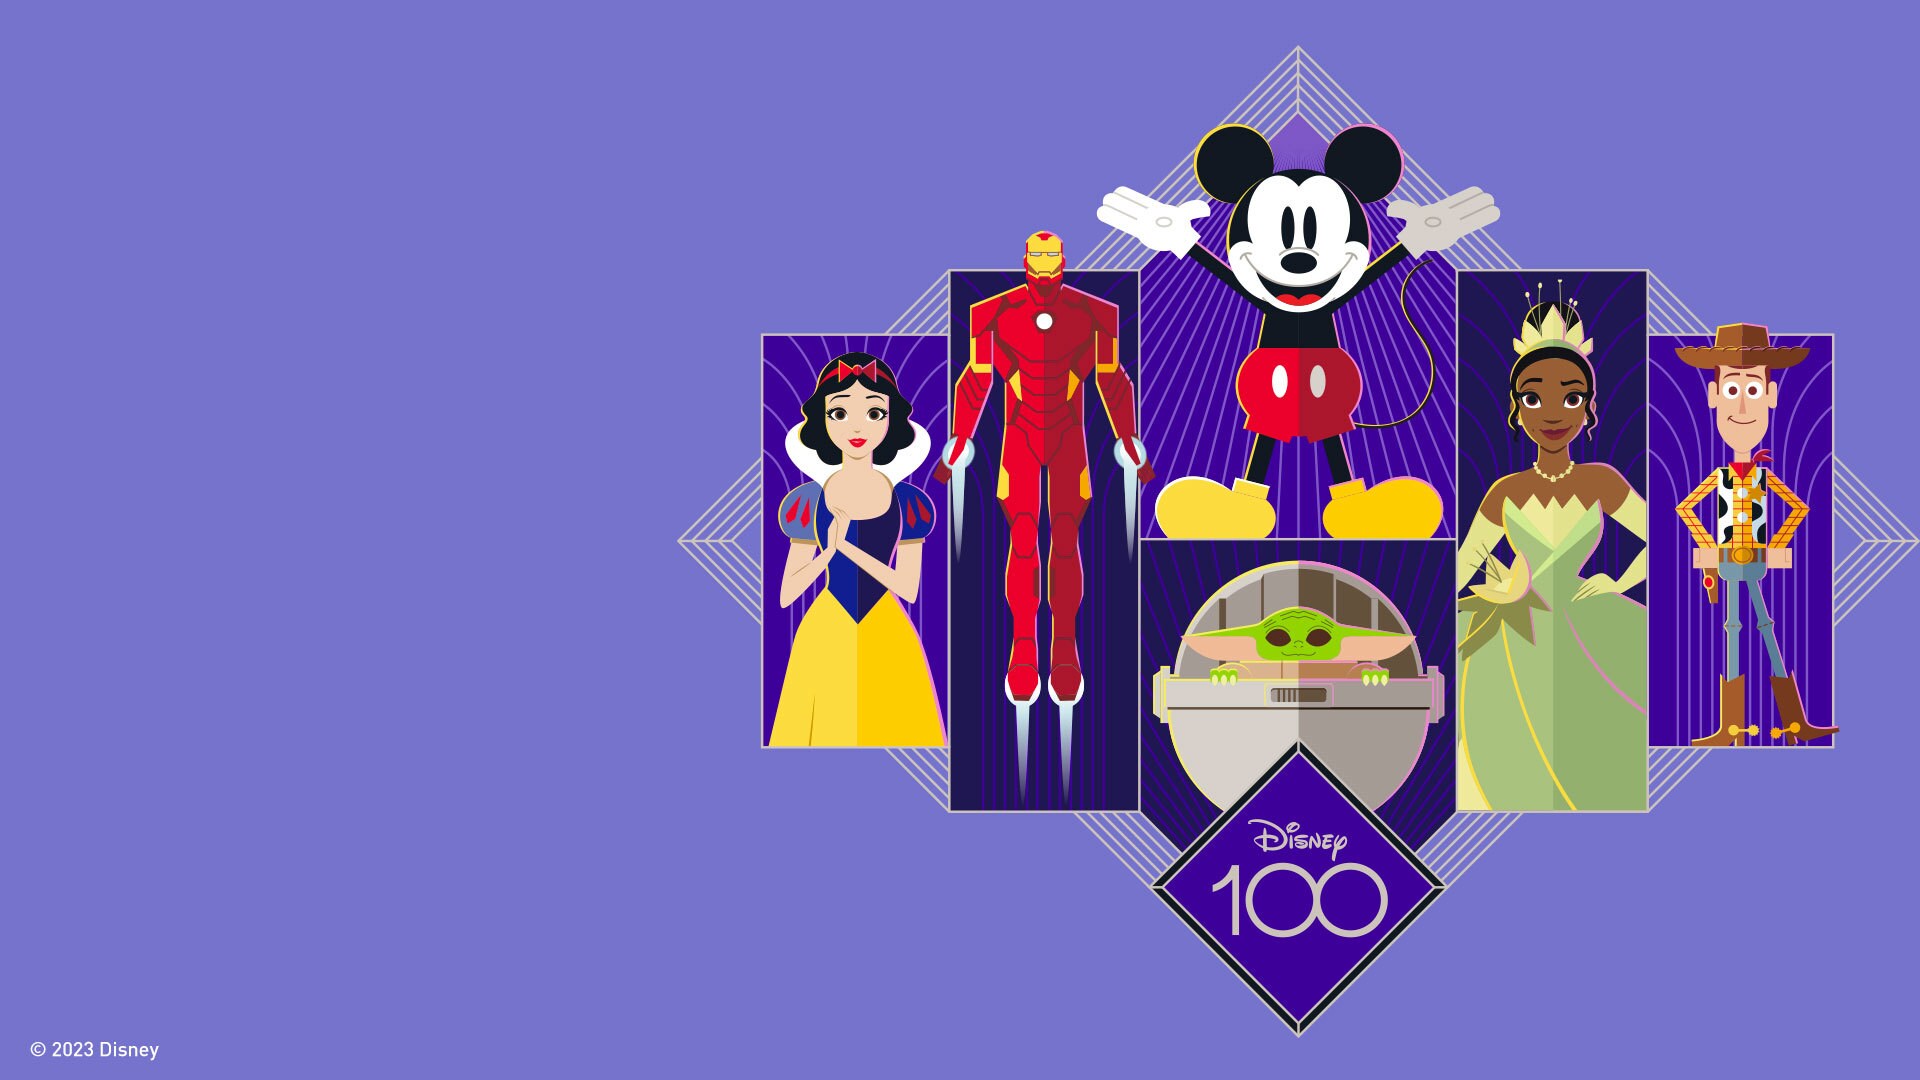 Disney 100 Background by jakeysamra on DeviantArt